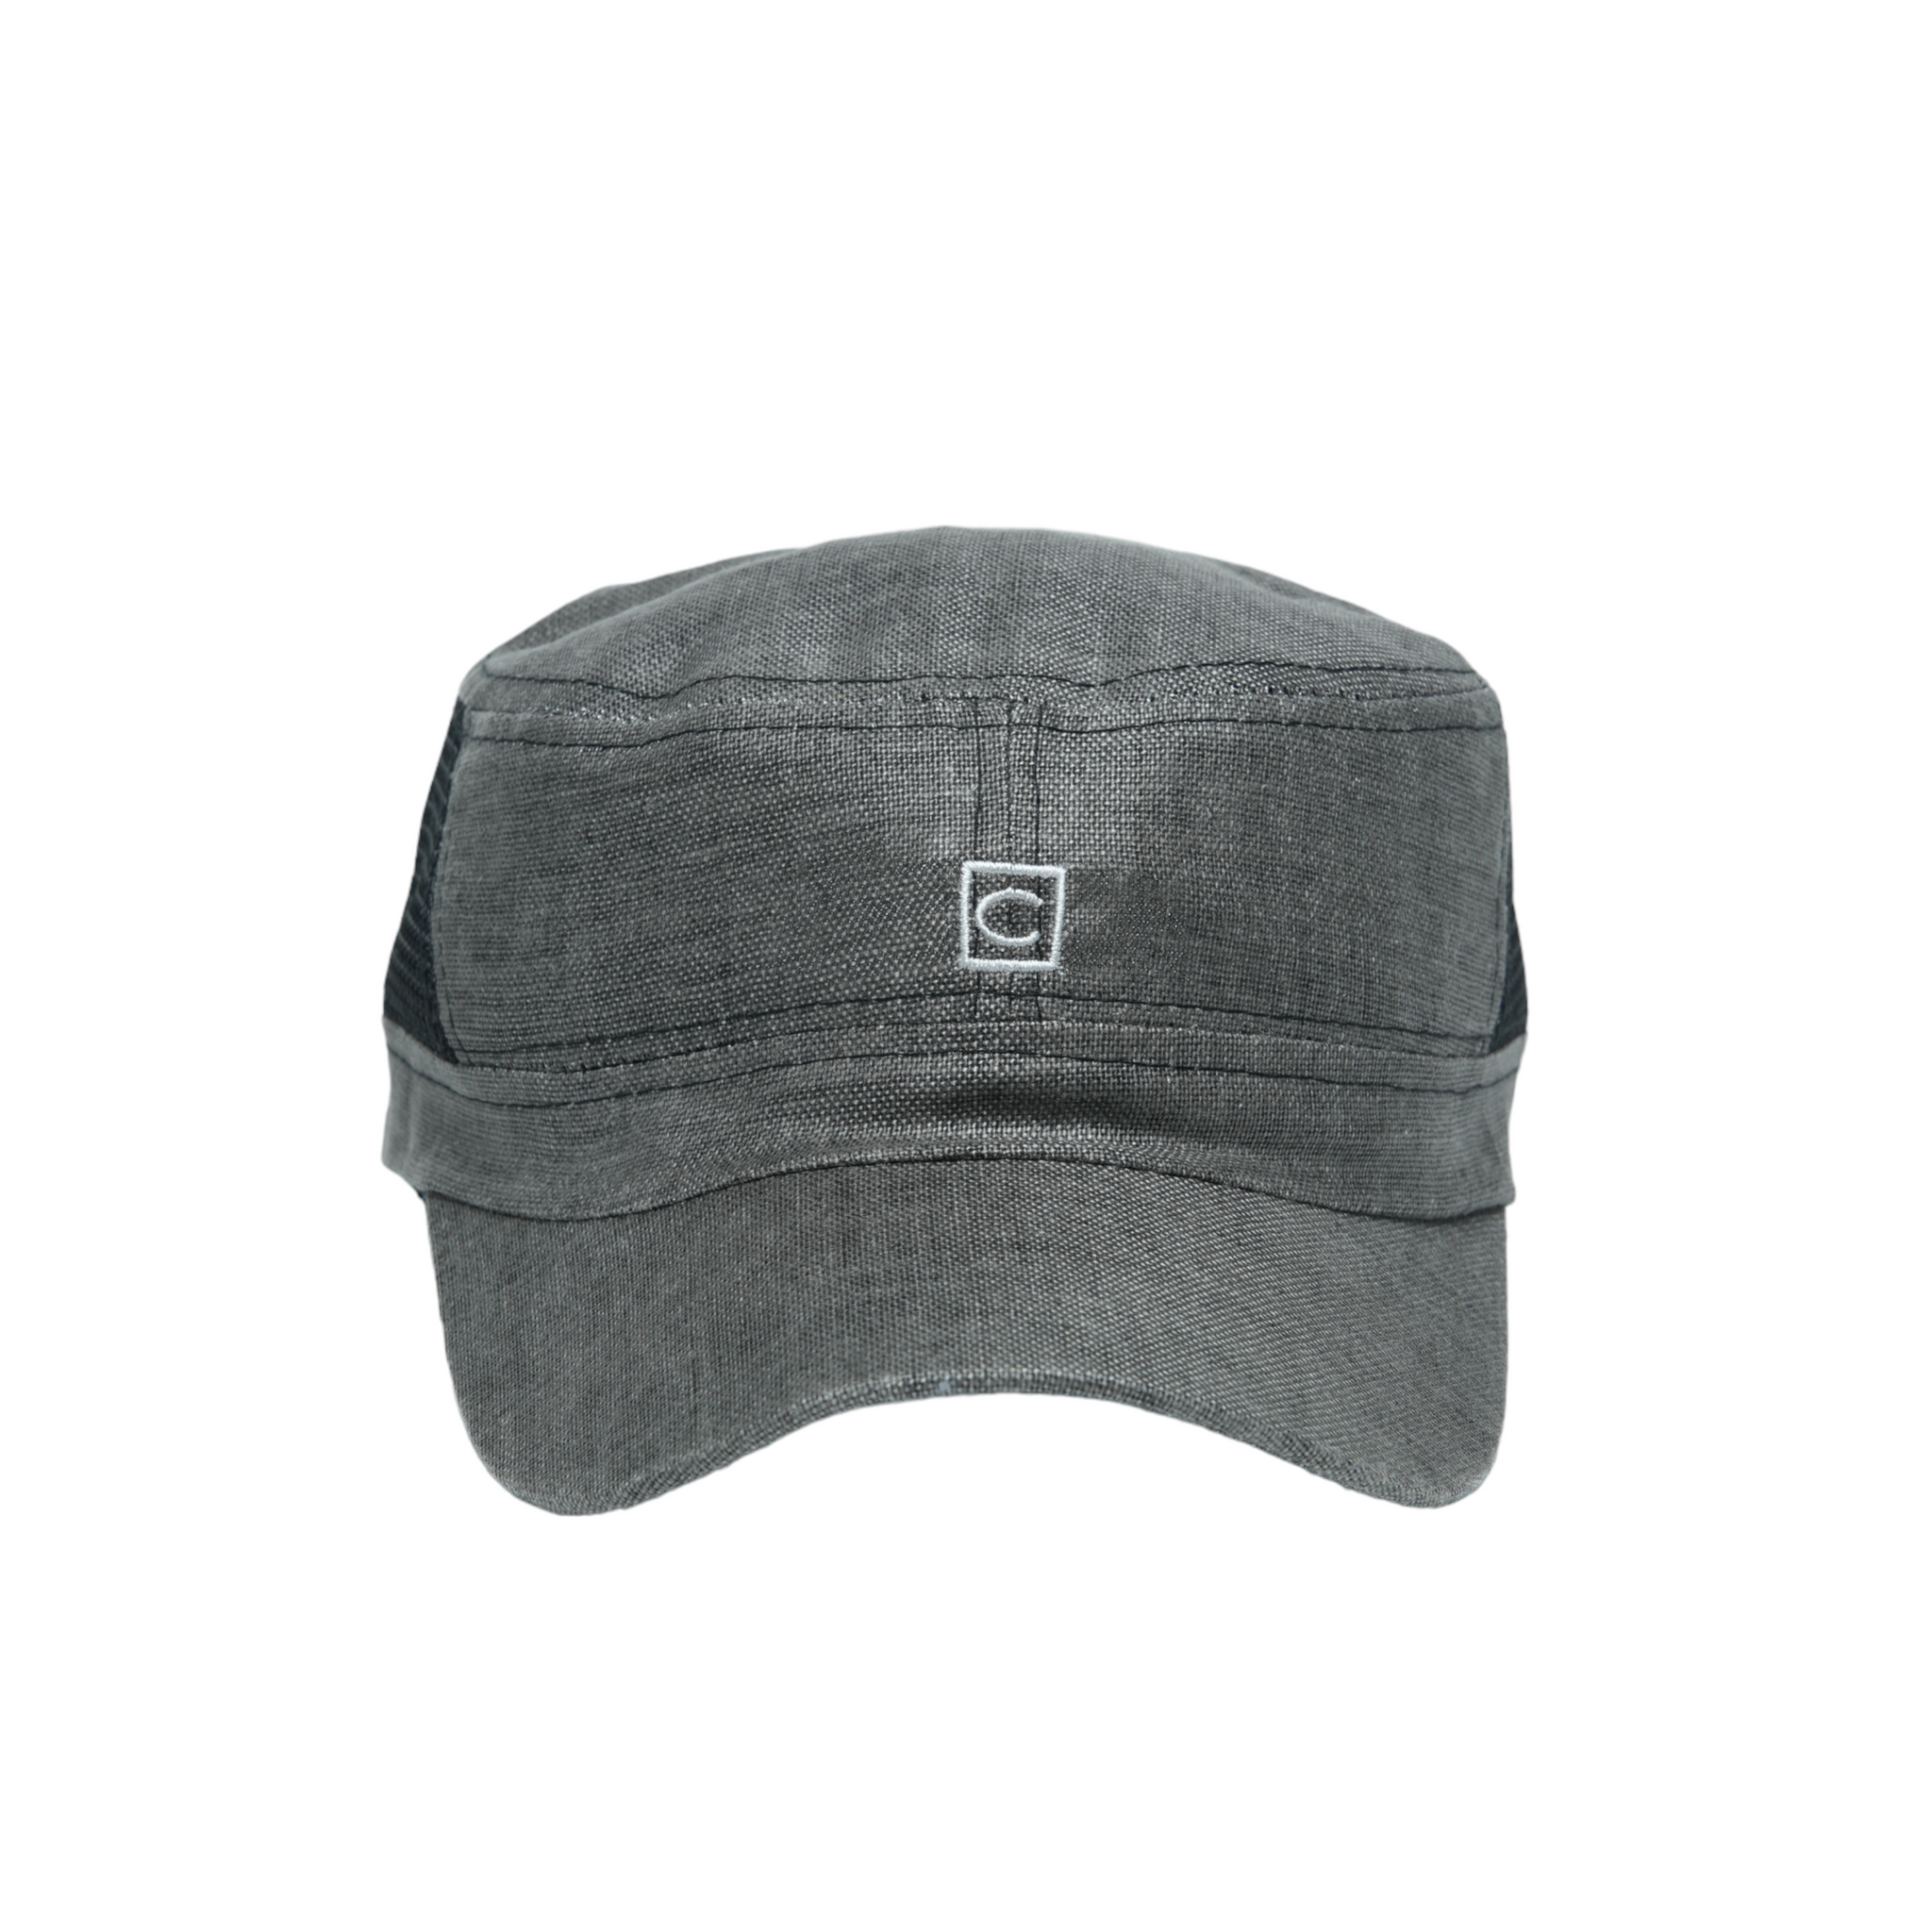 Chokore Linen Mesh Flat Top Cap (Gray & Black)